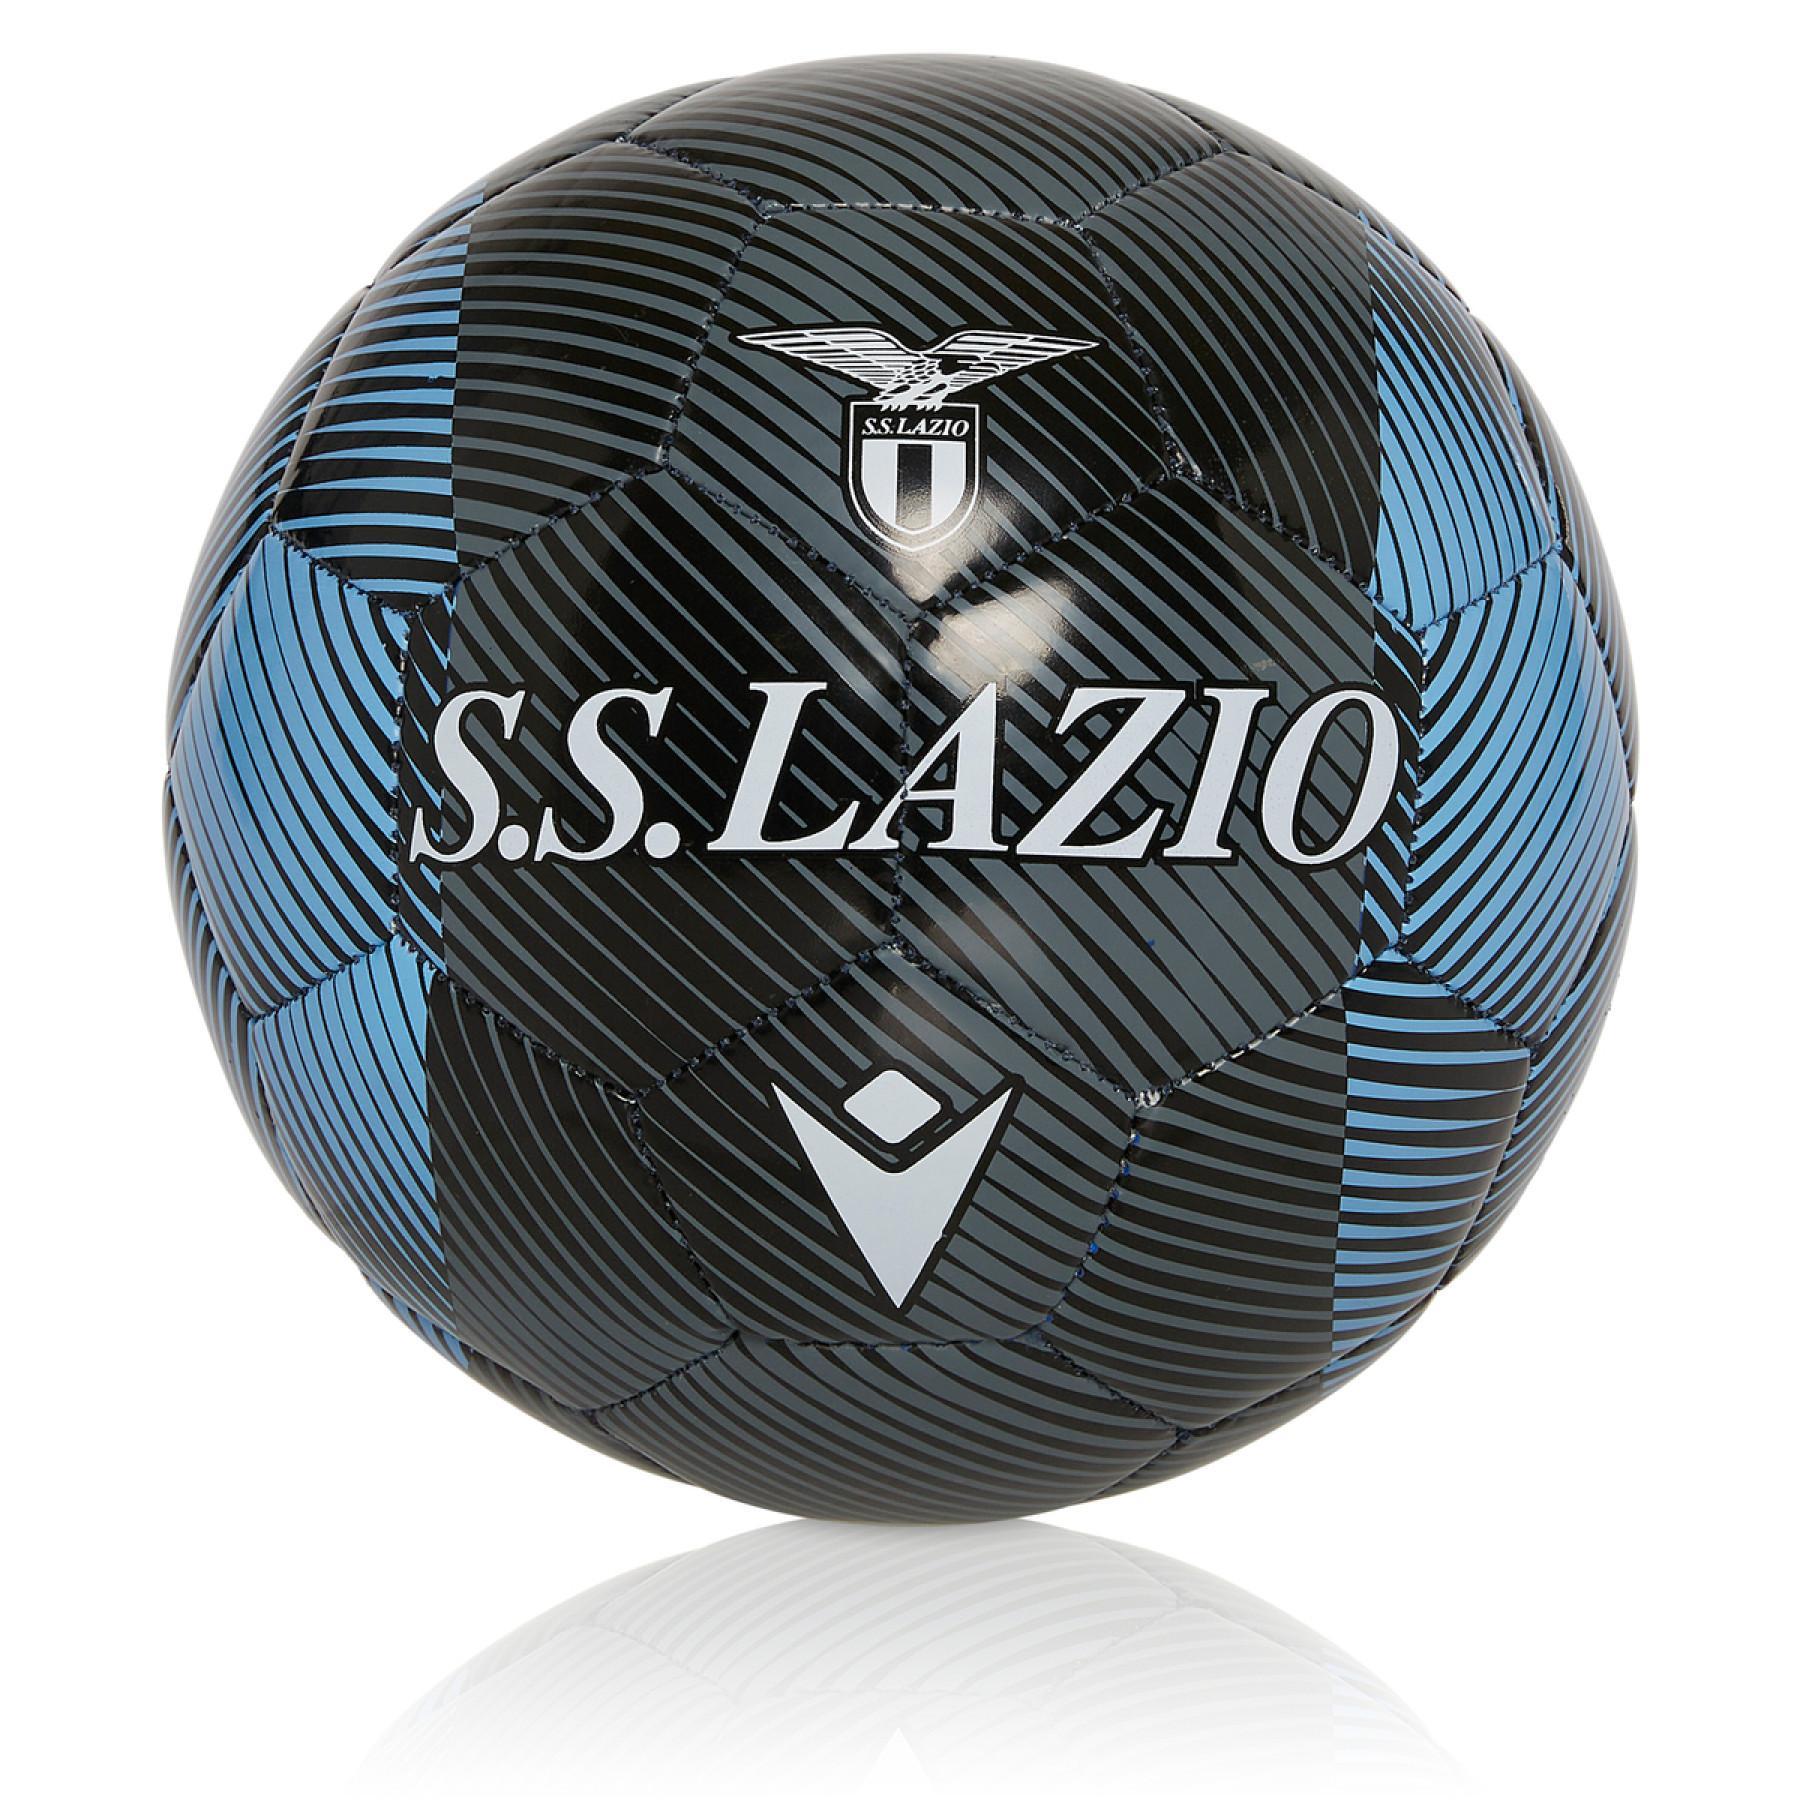 Bola Lazio Rome 2020/21